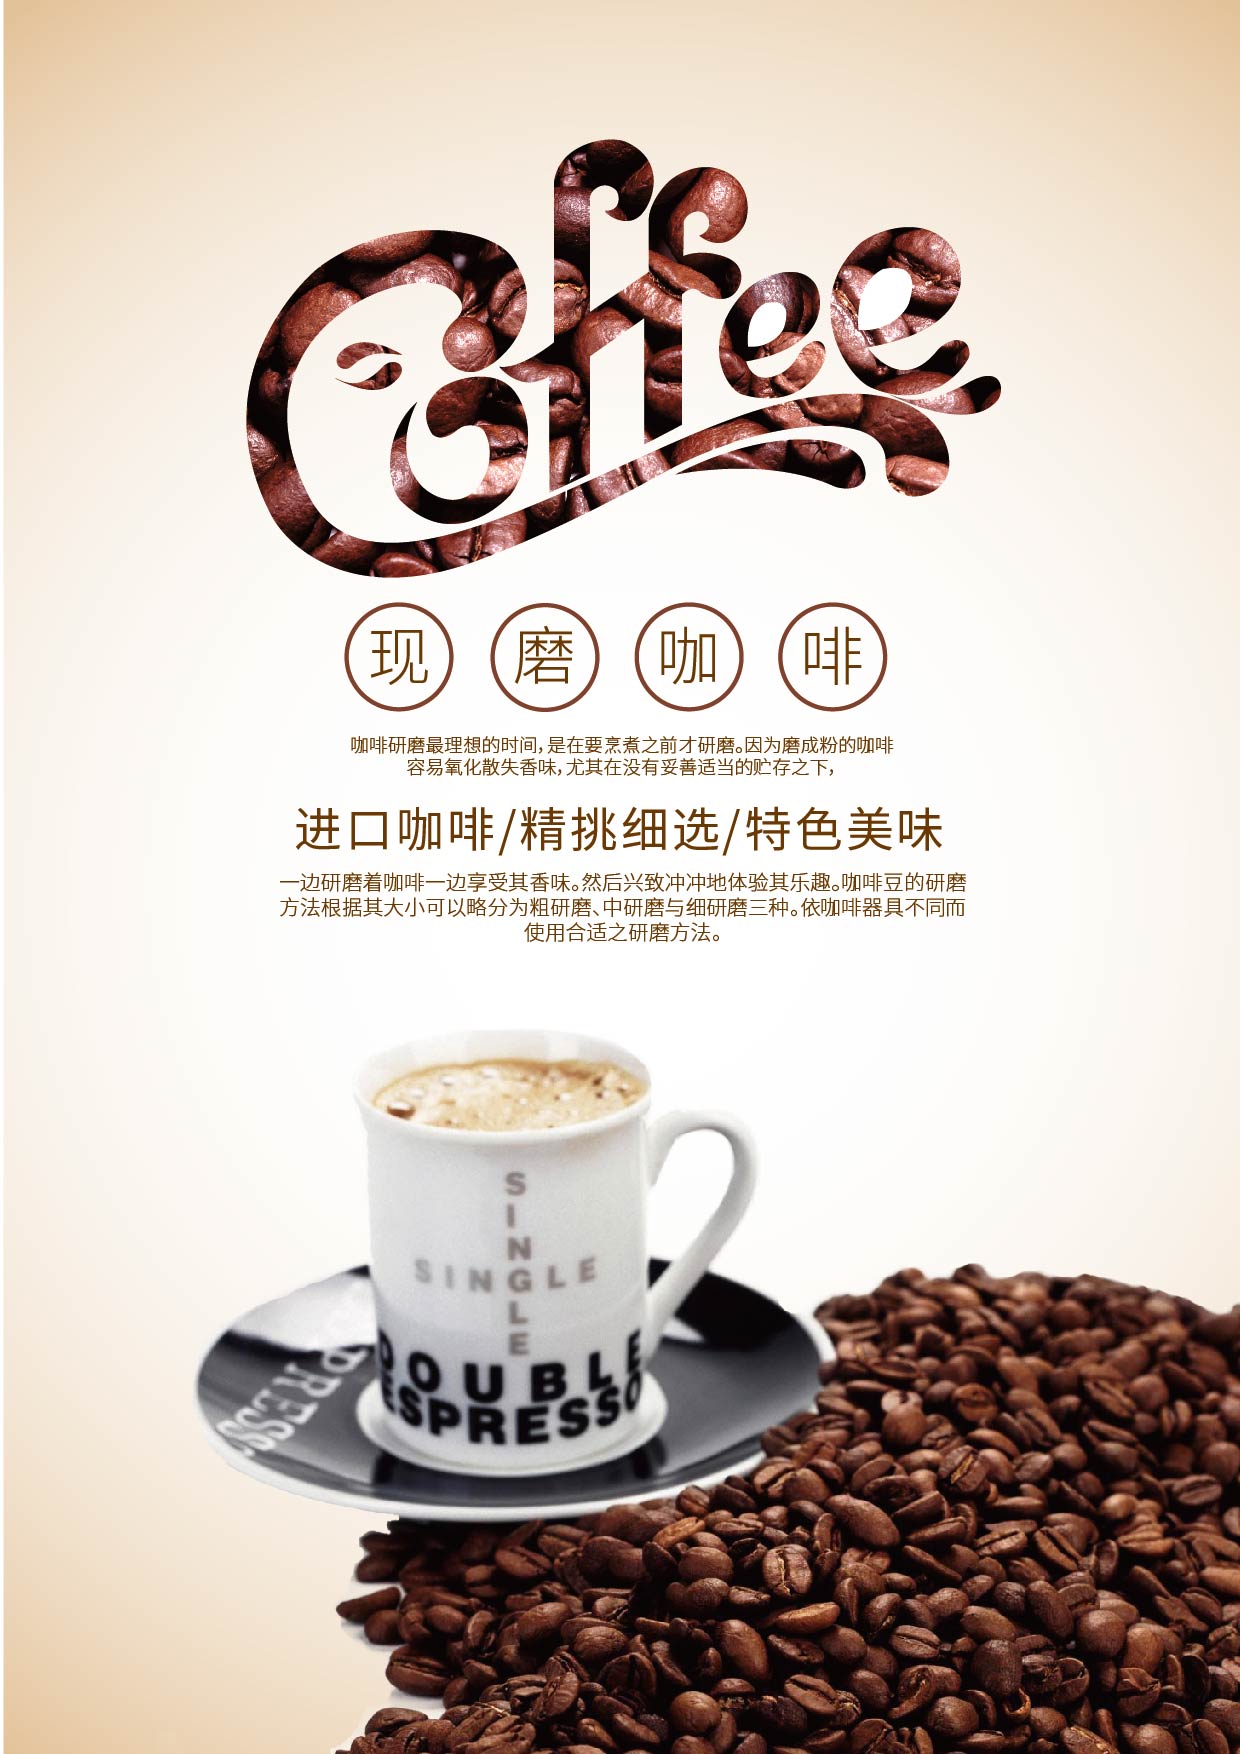 多米体育中国最大咖啡连锁品牌易主